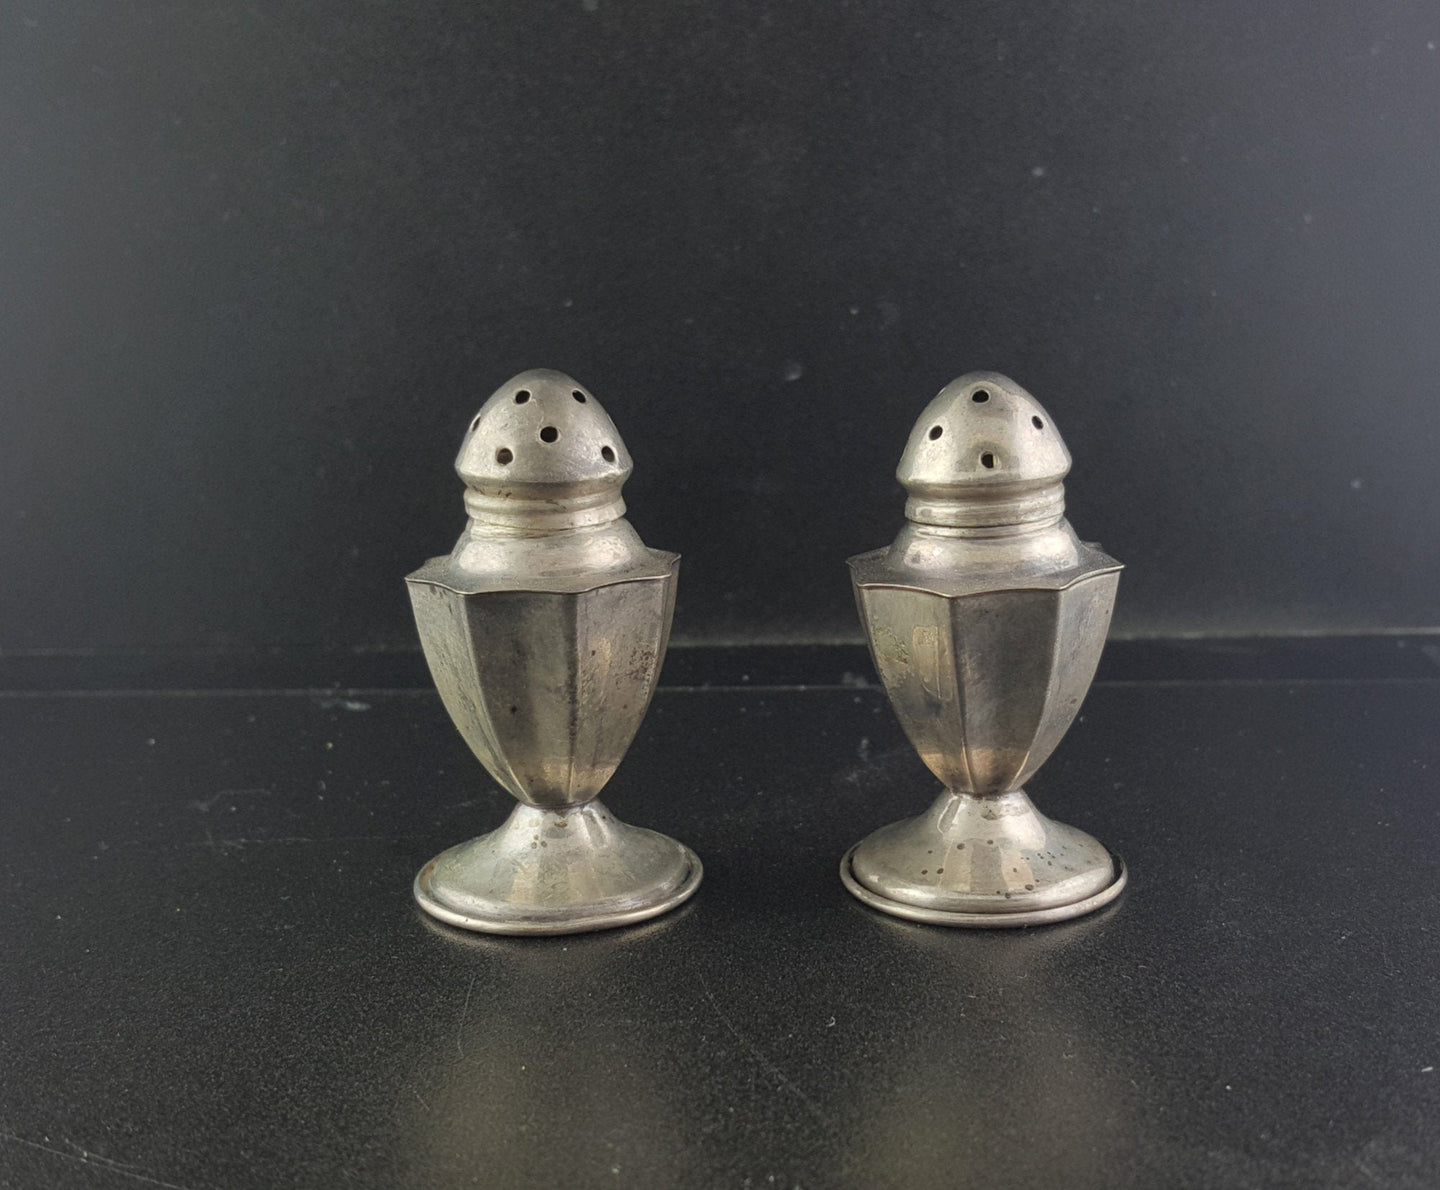 Medium antique bottle salt and pepper sterling silver shaker set - vintage